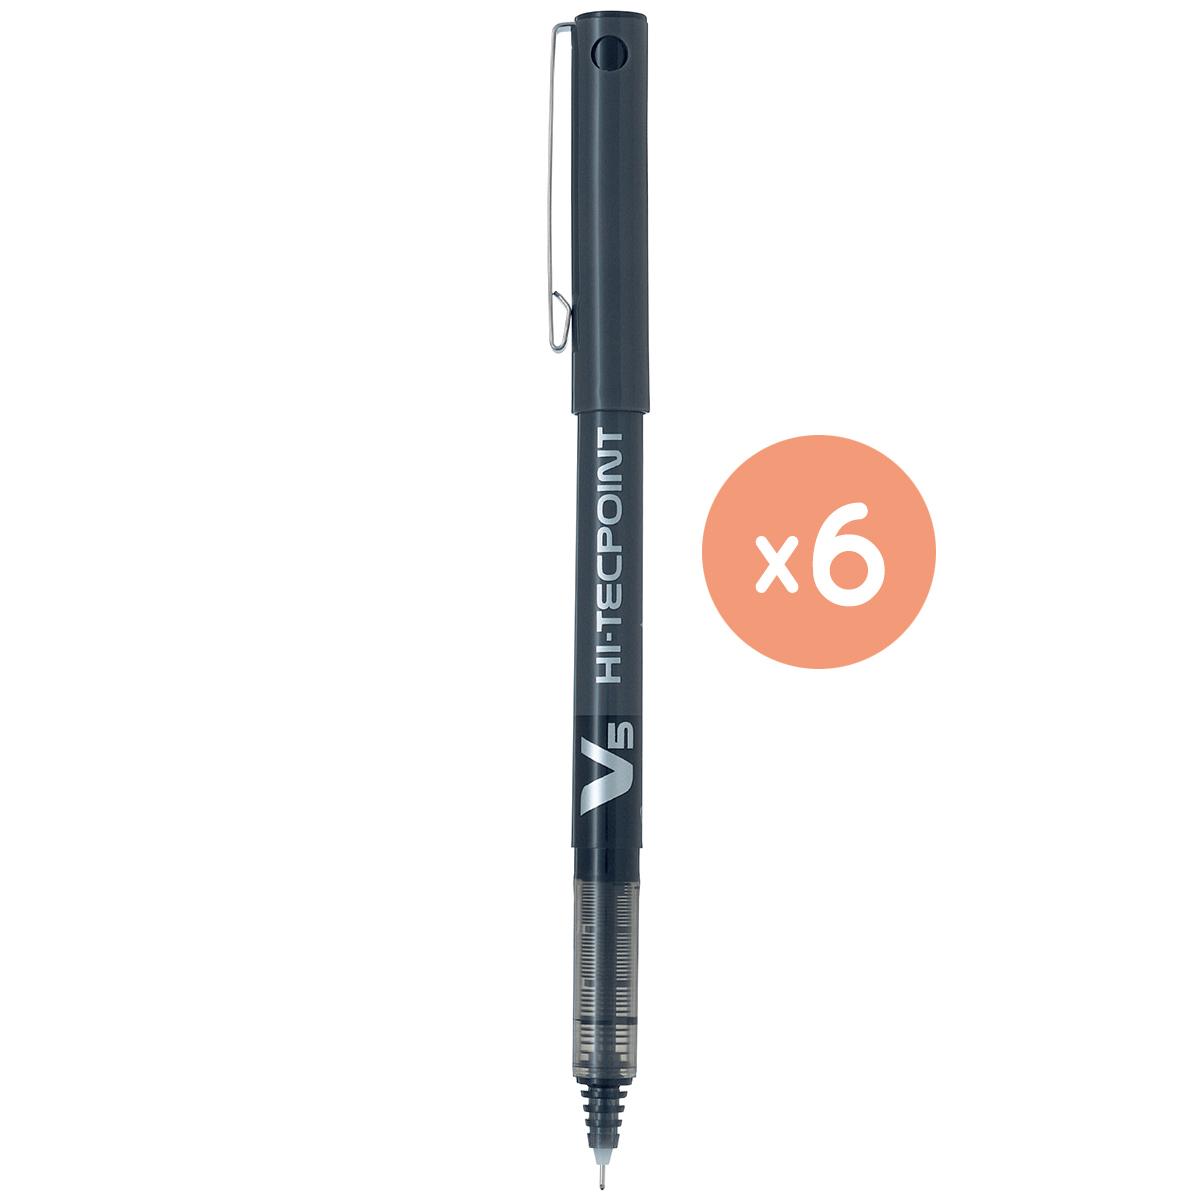 BX-V5 簽字筆, 幼咀, 黑色 x 6 支